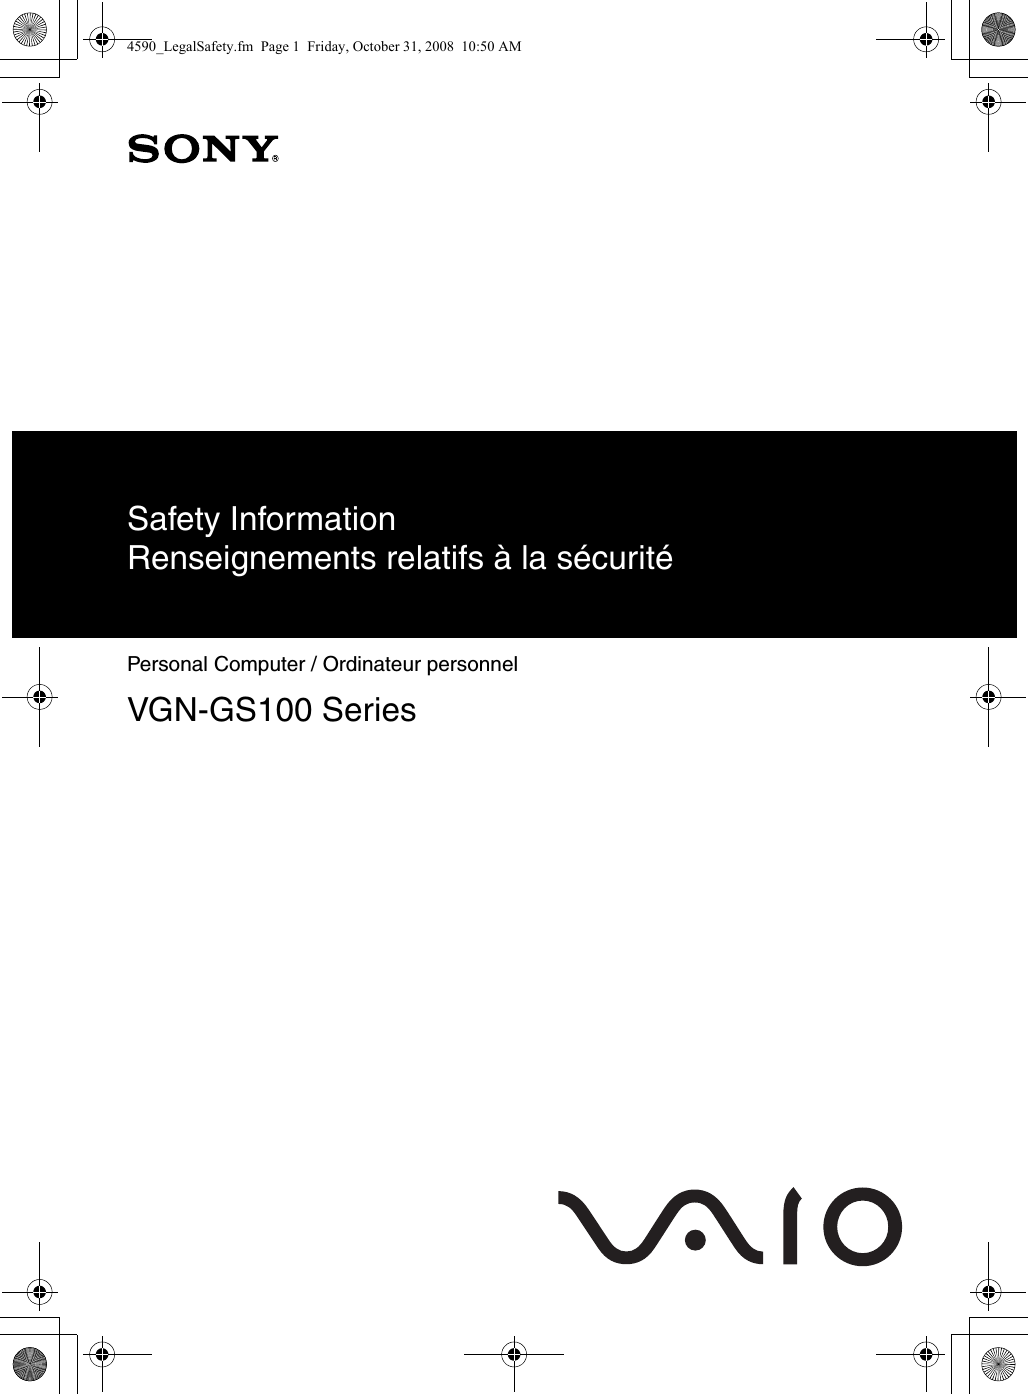 Safety InformationRenseignements relatifs à la sécuritéPersonal Computer / Ordinateur personnel VGN-GS100 Series4590_LegalSafety.fm  Page 1  Friday, October 31, 2008  10:50 AM